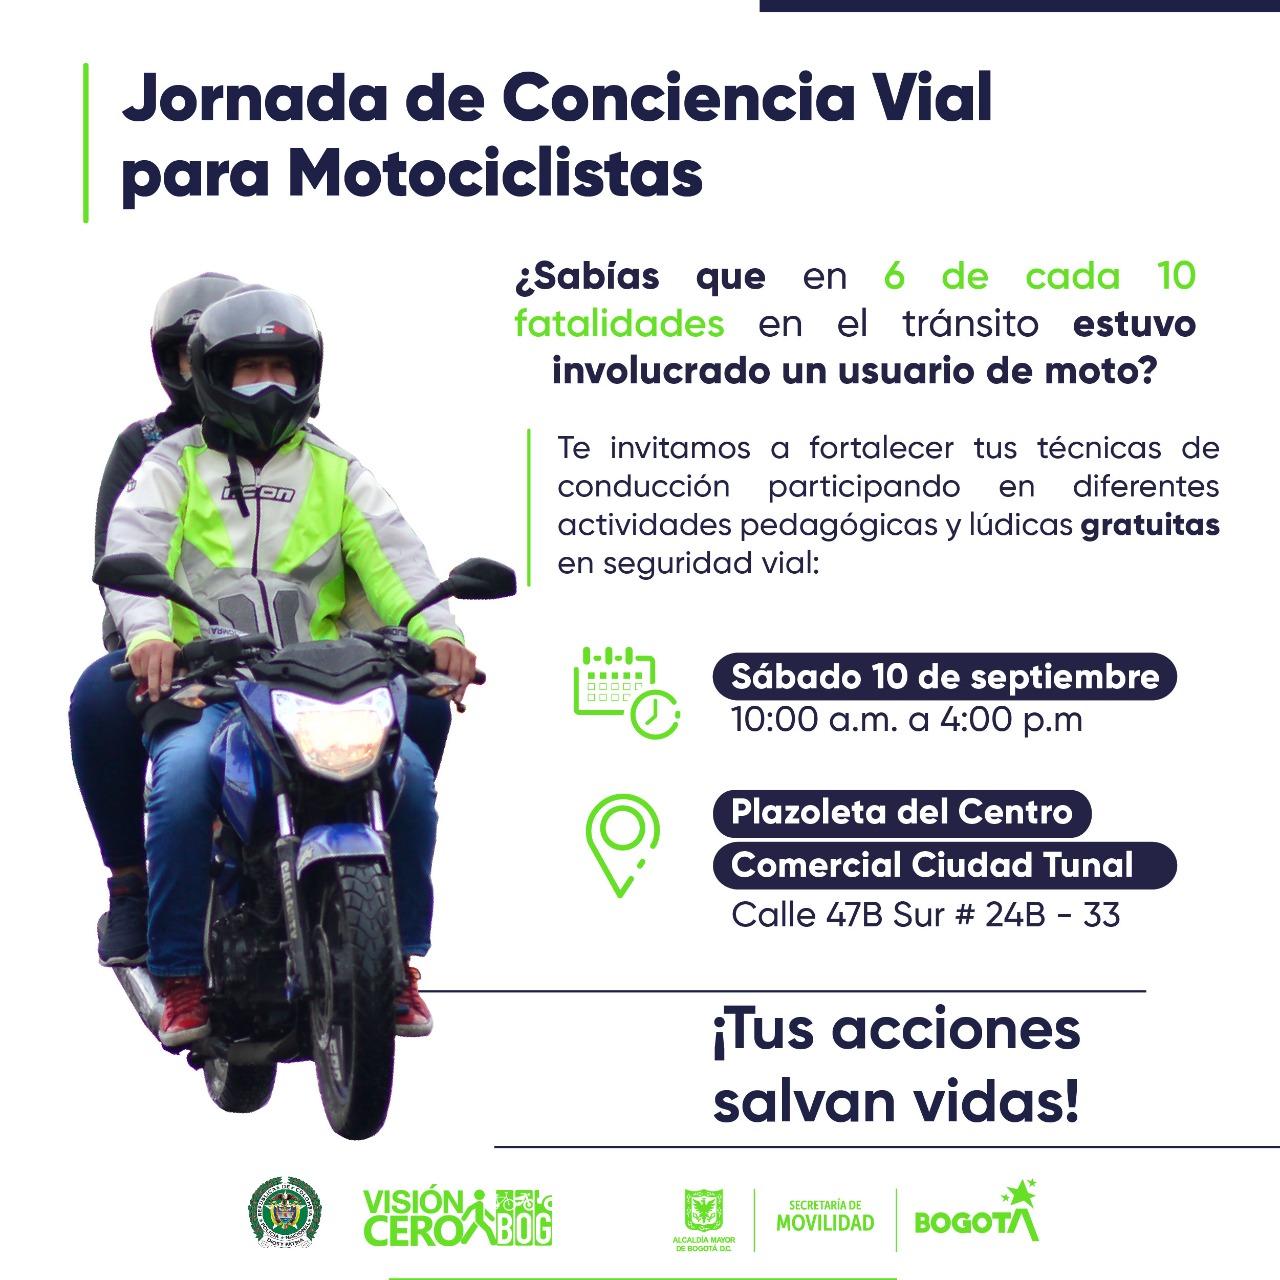 Jornada de Conciencia Vial para Motociclistas 10 de septiembre 2022